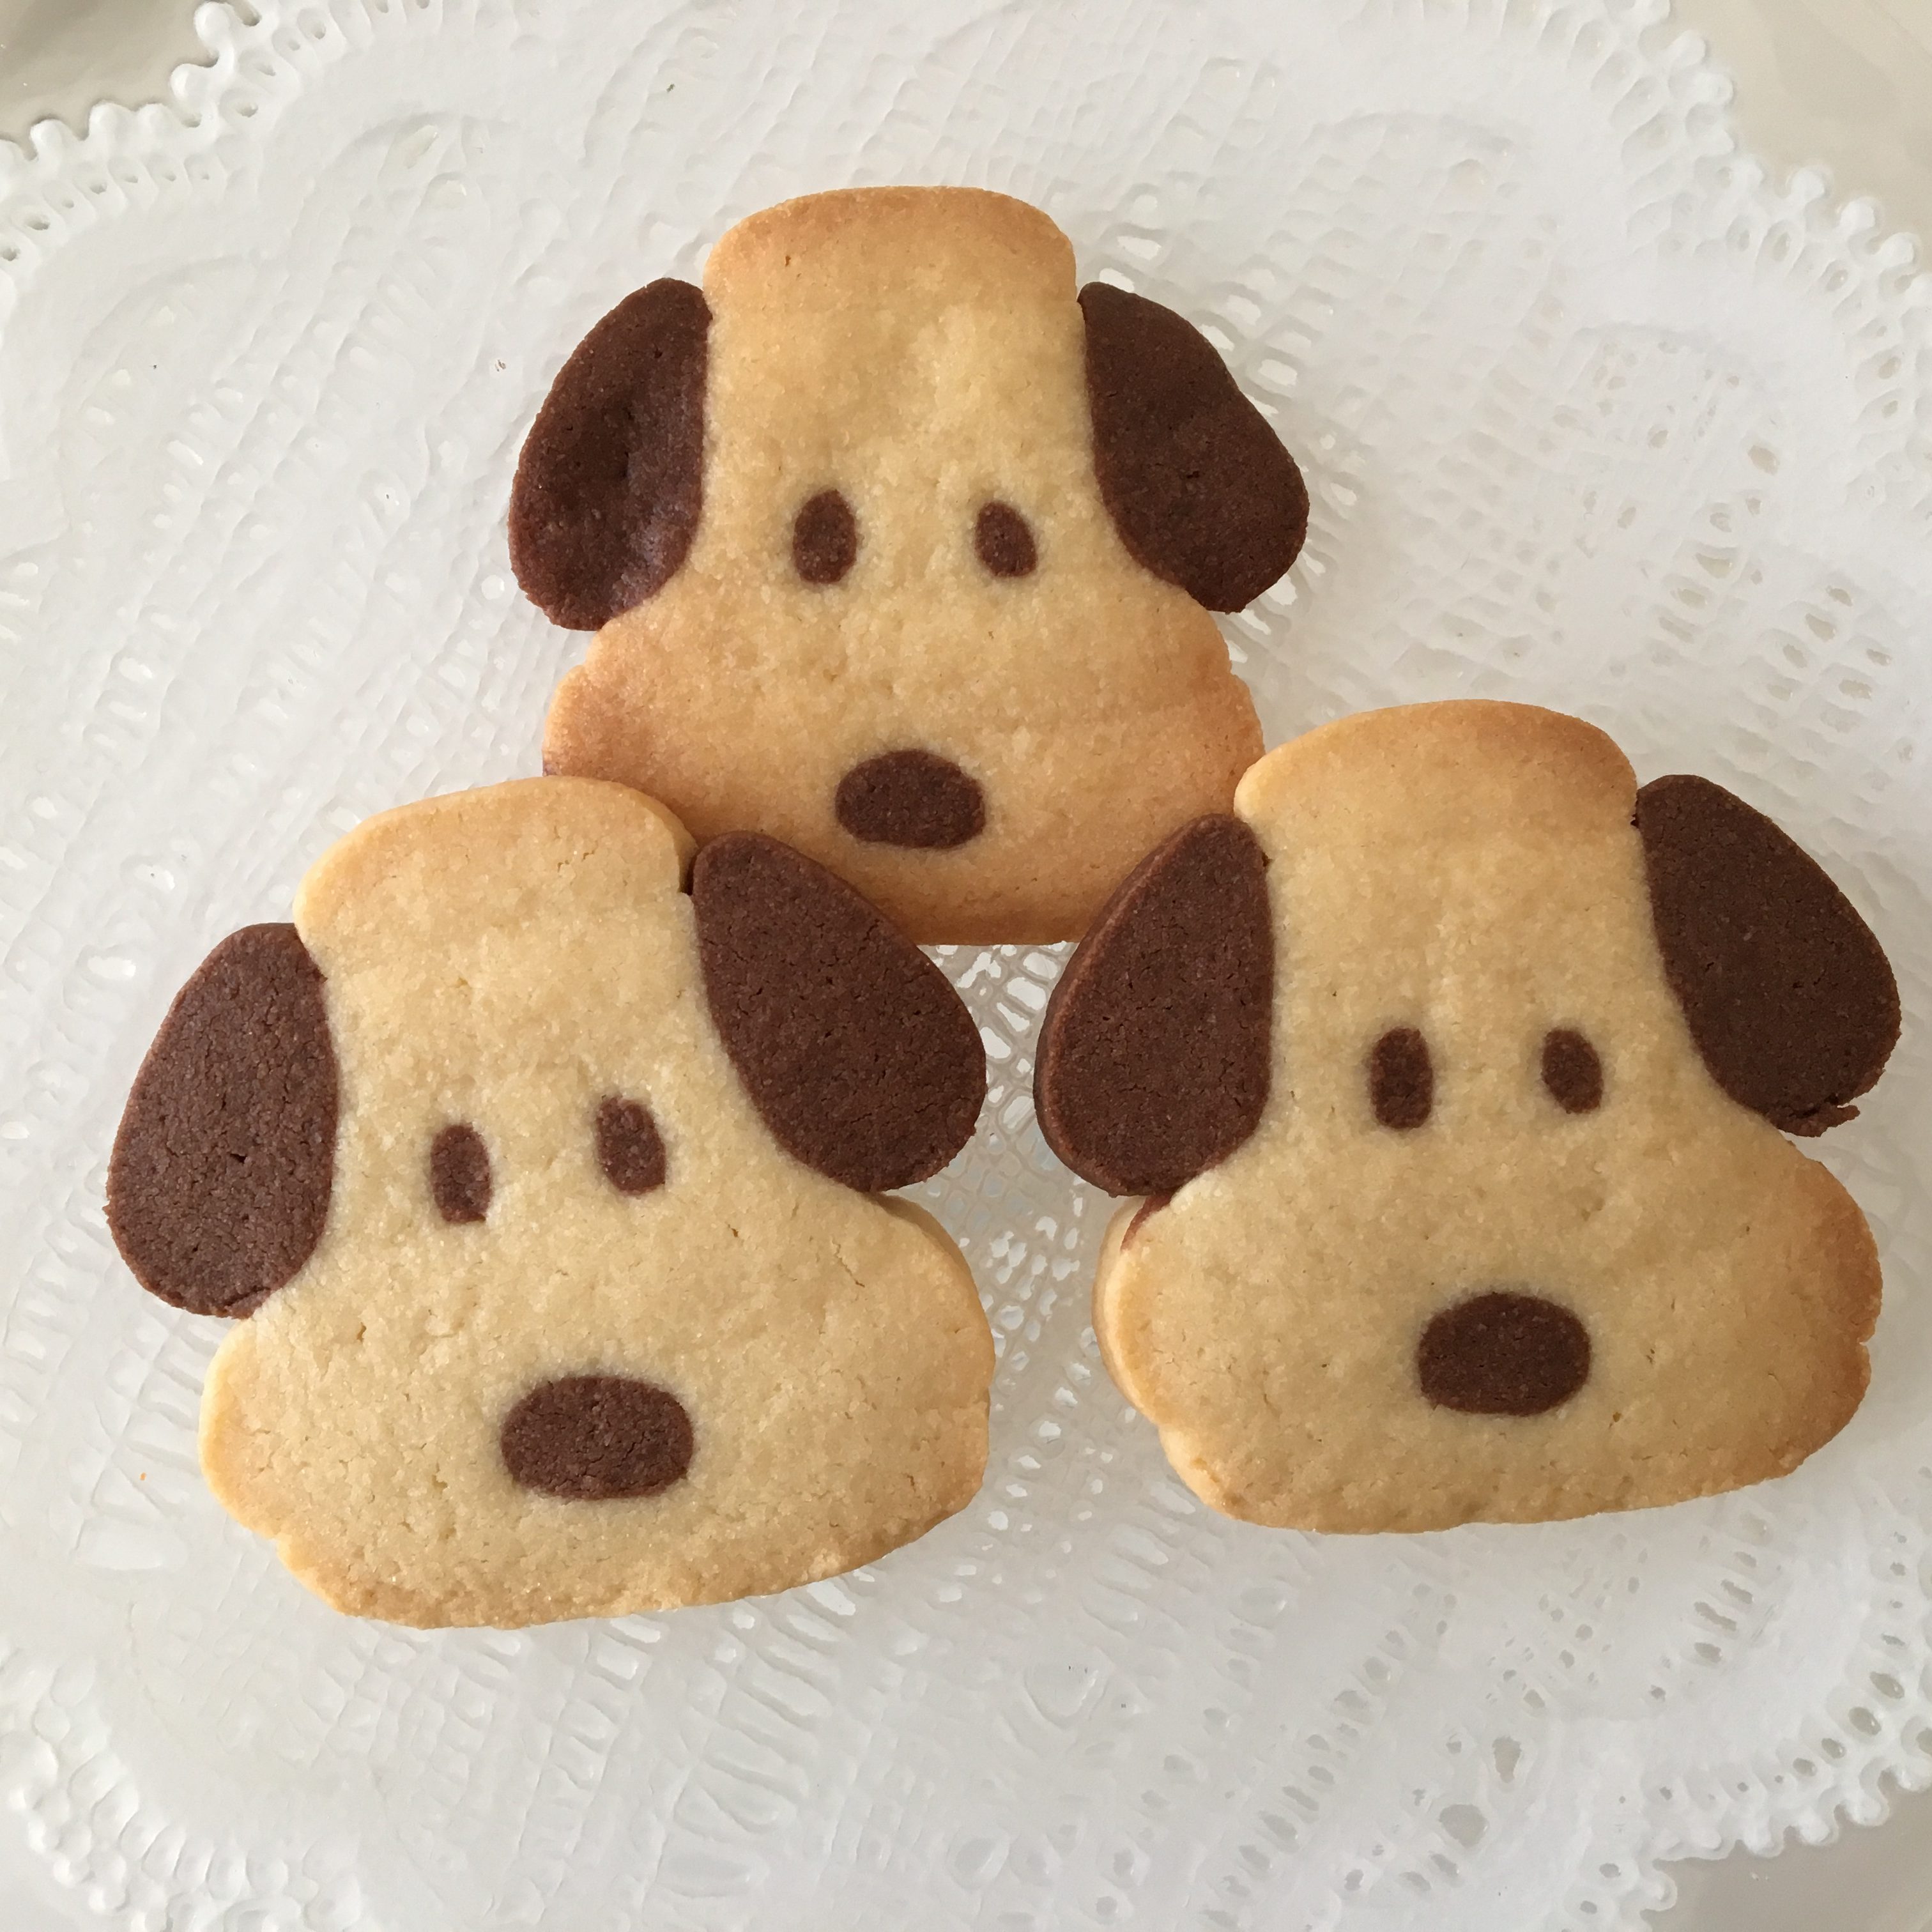 2月 3月 犬 一般社団法人 日本アイスボックスクッキー協会